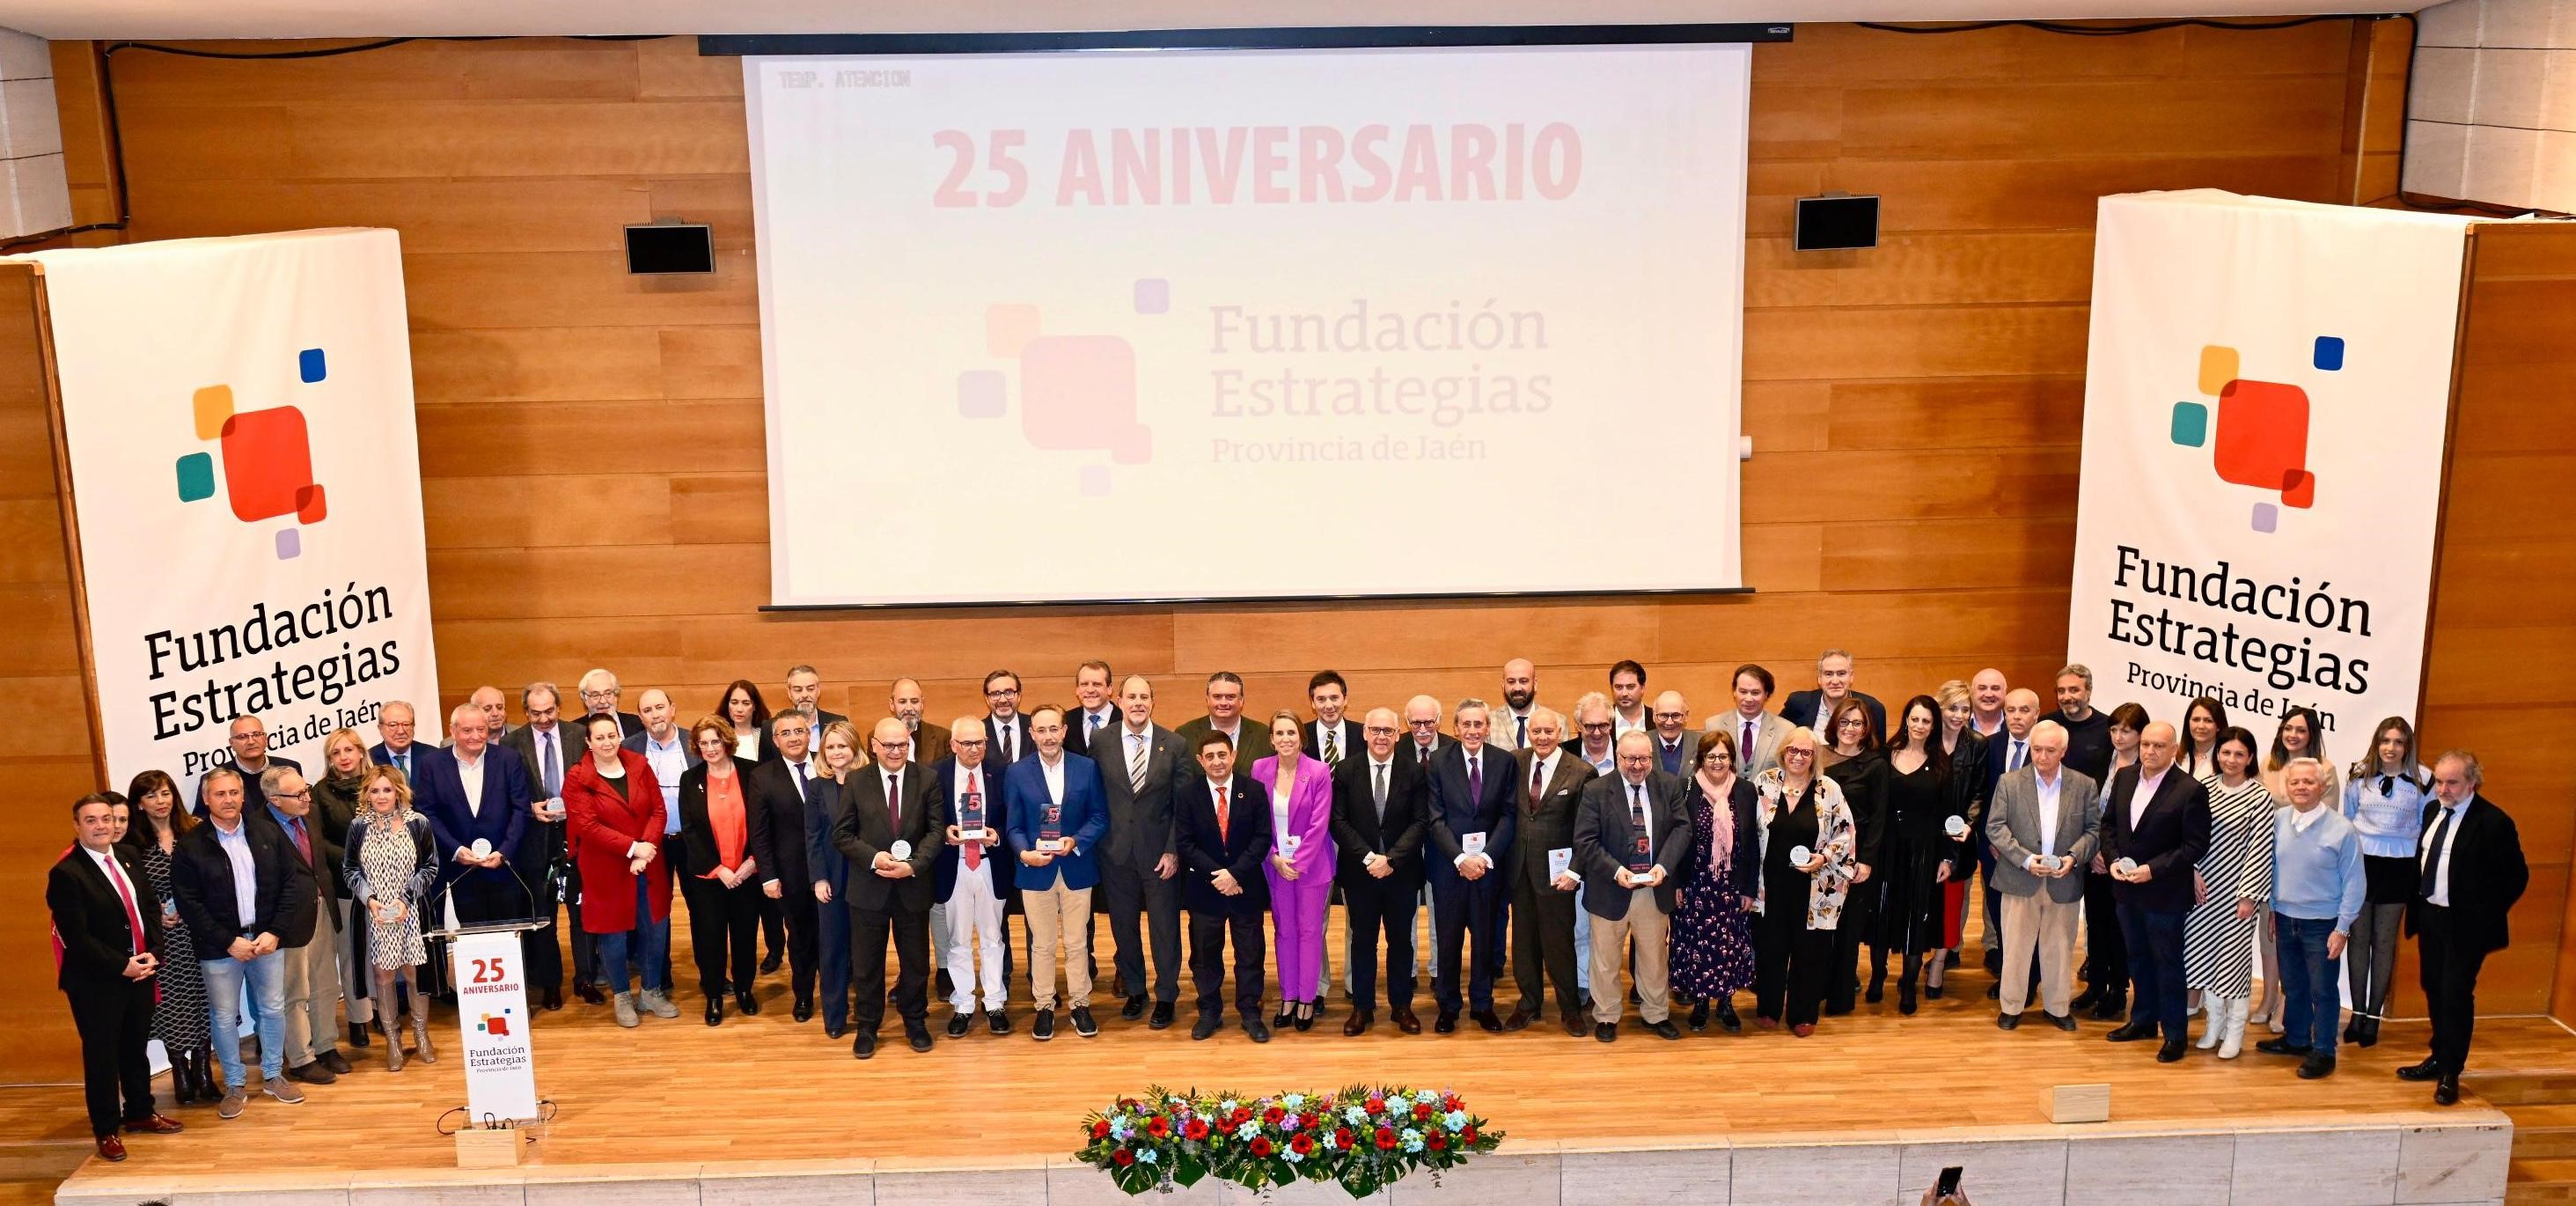 La Fundación Estrategias celebra su 25º aniversario con una gala en la que se han dado cita casi 300 jiennenses de todos los ámbitos